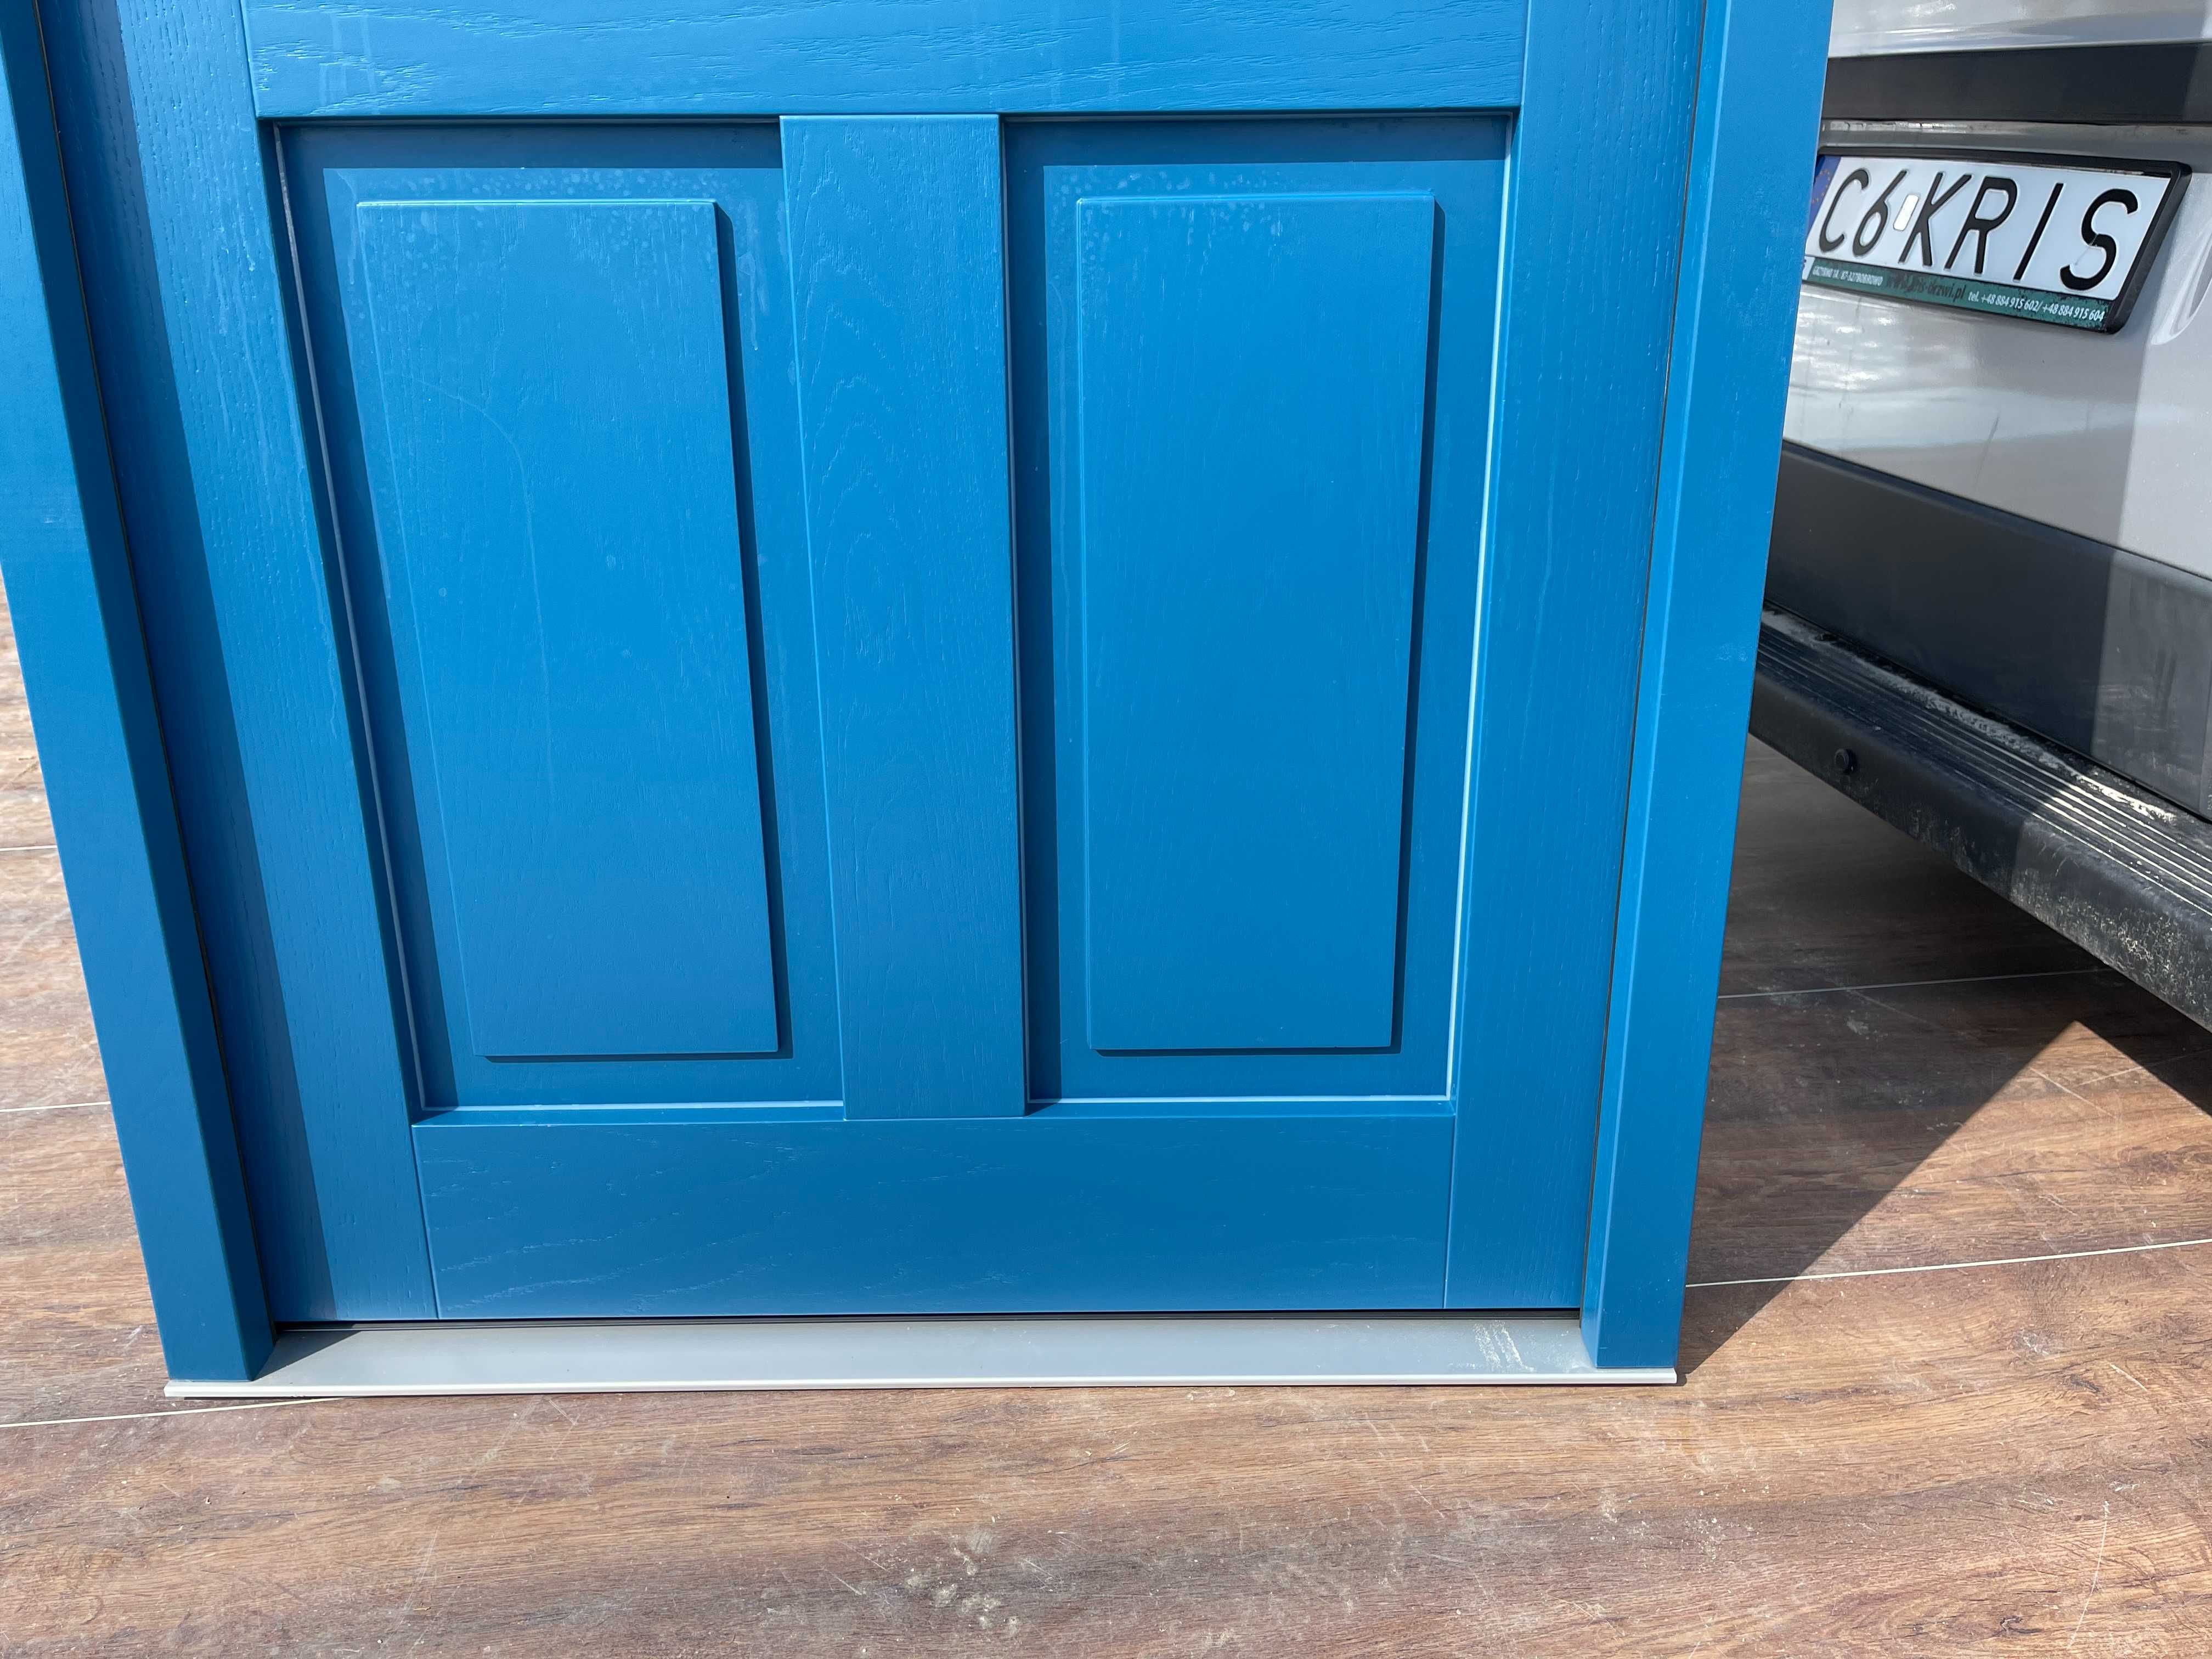 Drzwi zewnętrzne drewniane  ANGIELSKIE niebieskie CZYSTE POWIETRZE